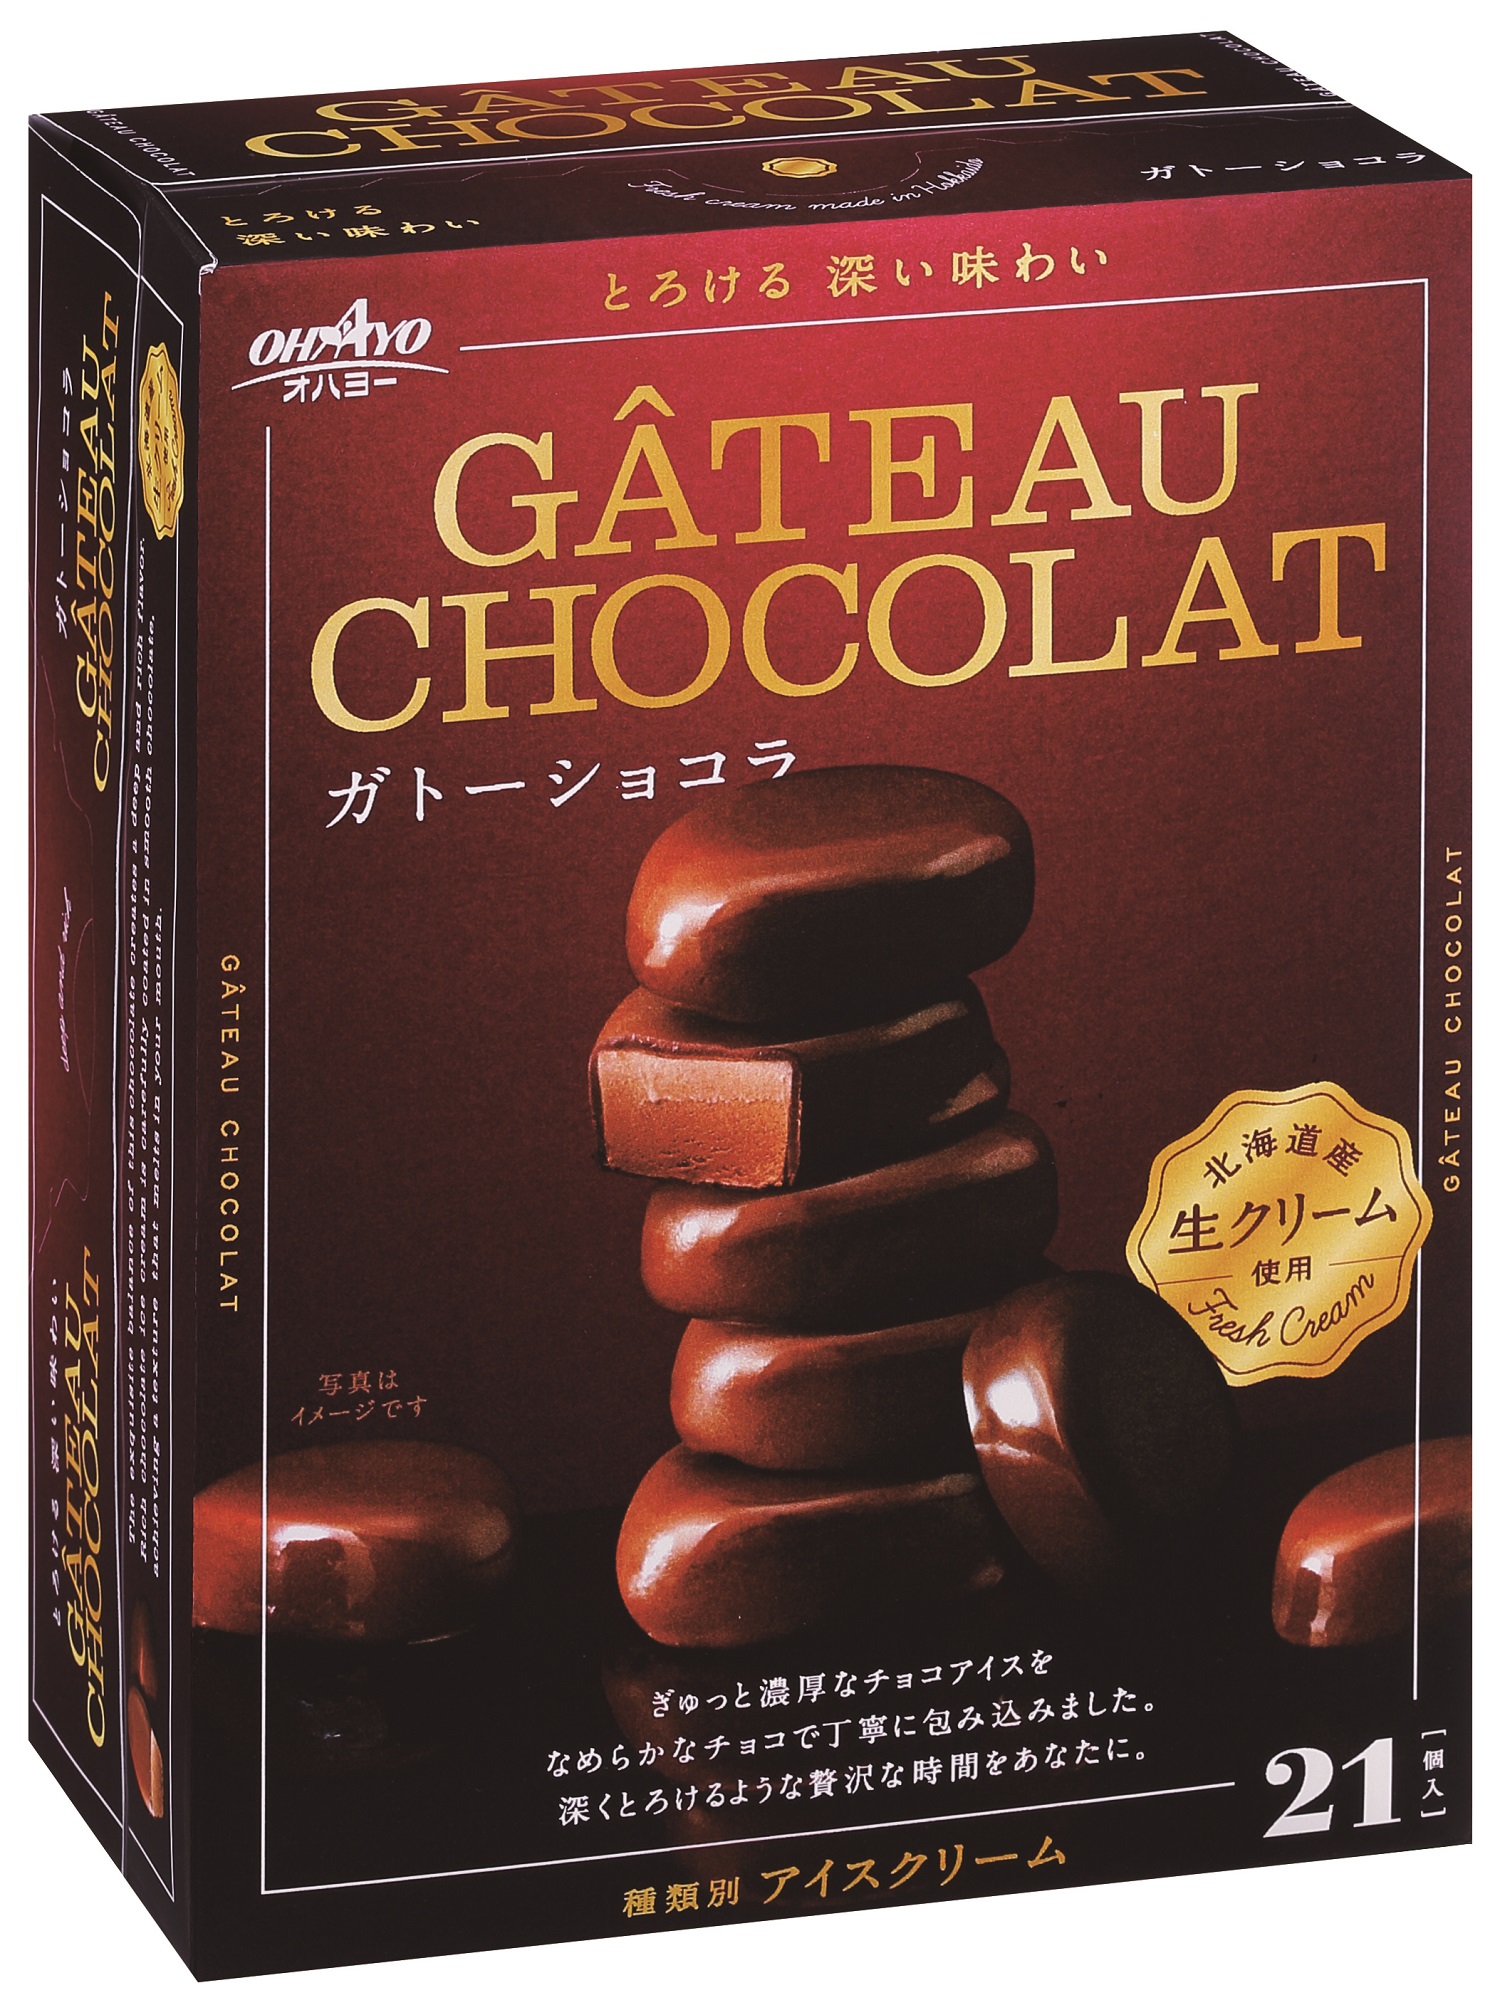 濃厚なチョコアイスをチョココーティングしたひとくちアイスgateau Chocolat ガトーショコラ 新発売のご案内 オハヨー乳業のプレスリリース